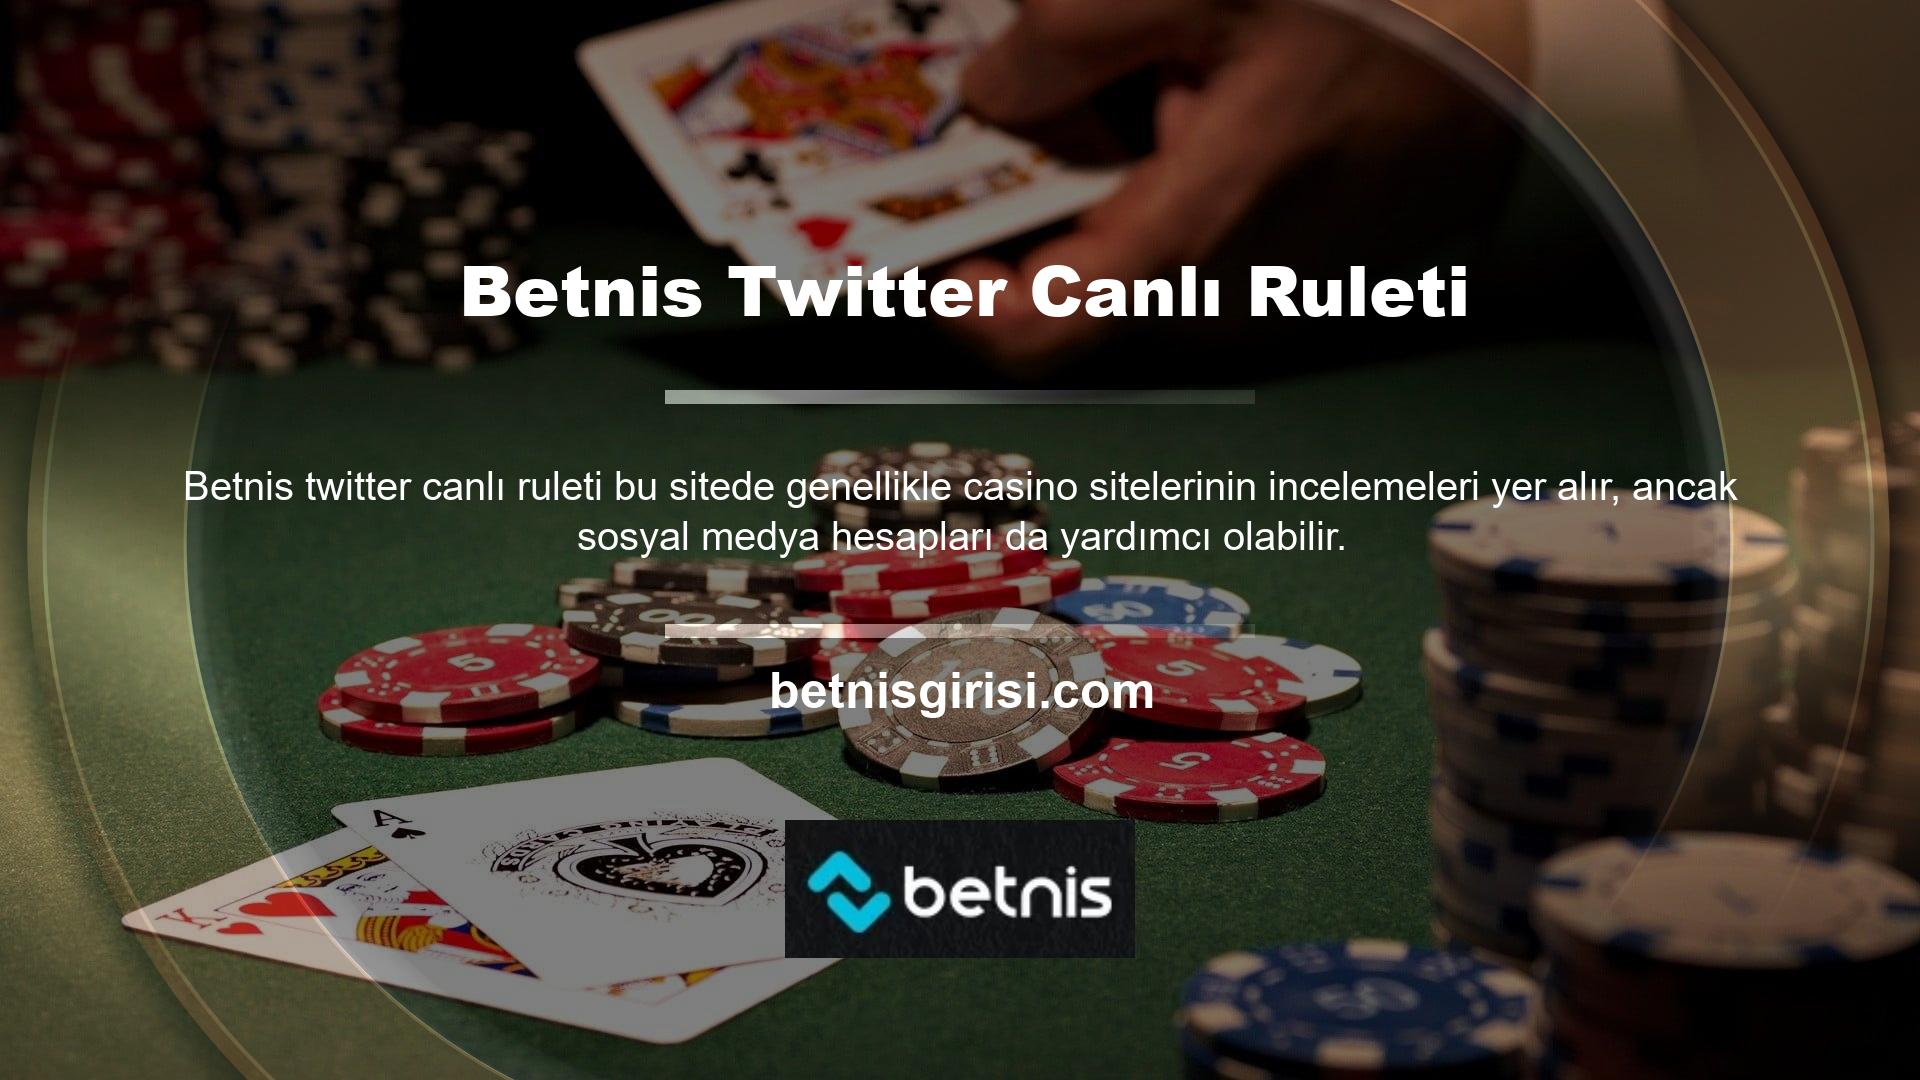 Sosyal medya uygulamasının aktif kullanımı Betnis Twitter canlı ruleti, bu kanallar üzerinden bildirimler gönderecek ve kullanıcıların bunları düzenli olarak takip etmesini gerektirecek